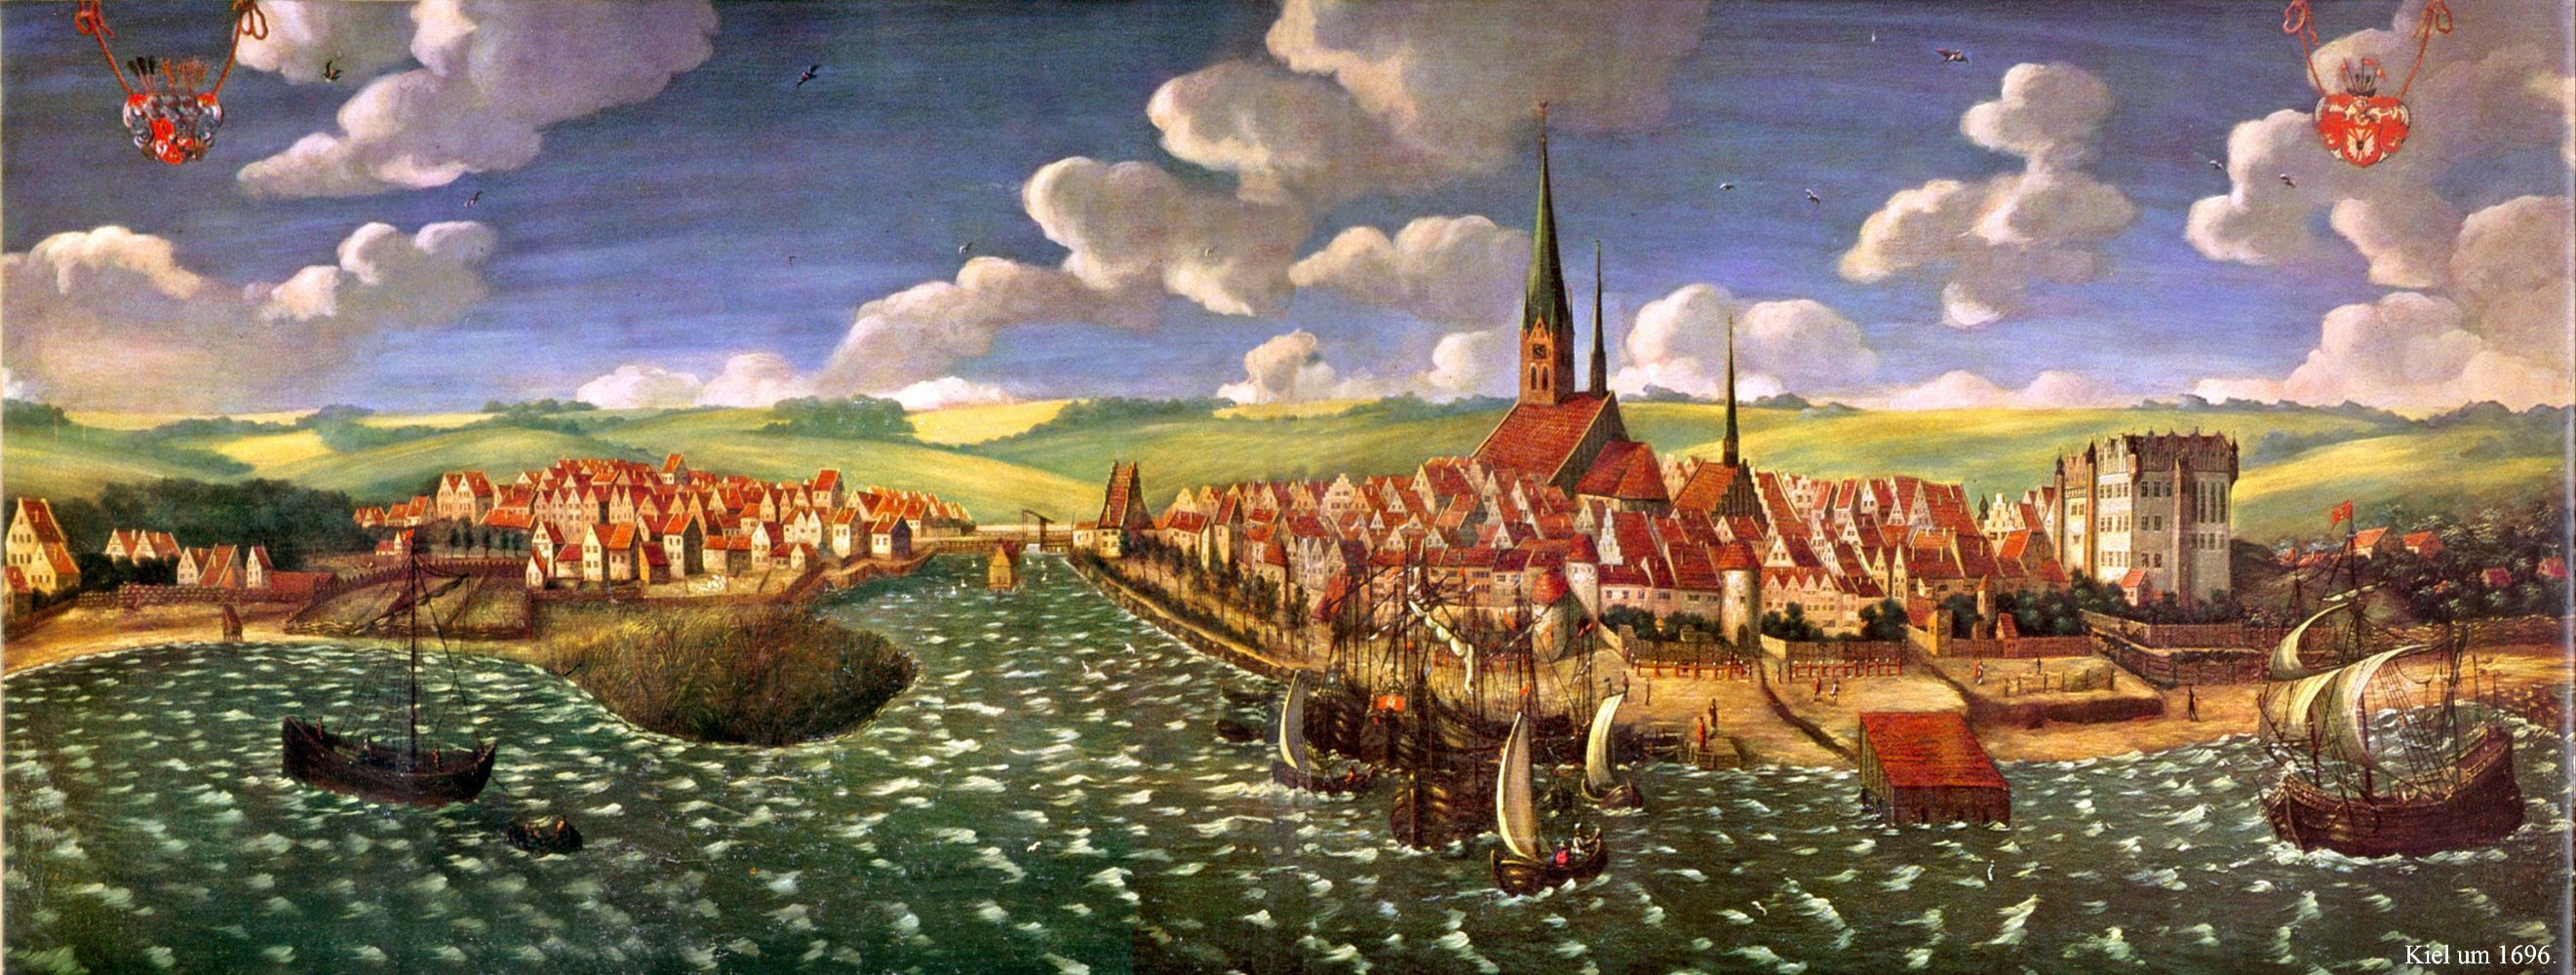 Kiel Panorama 1696